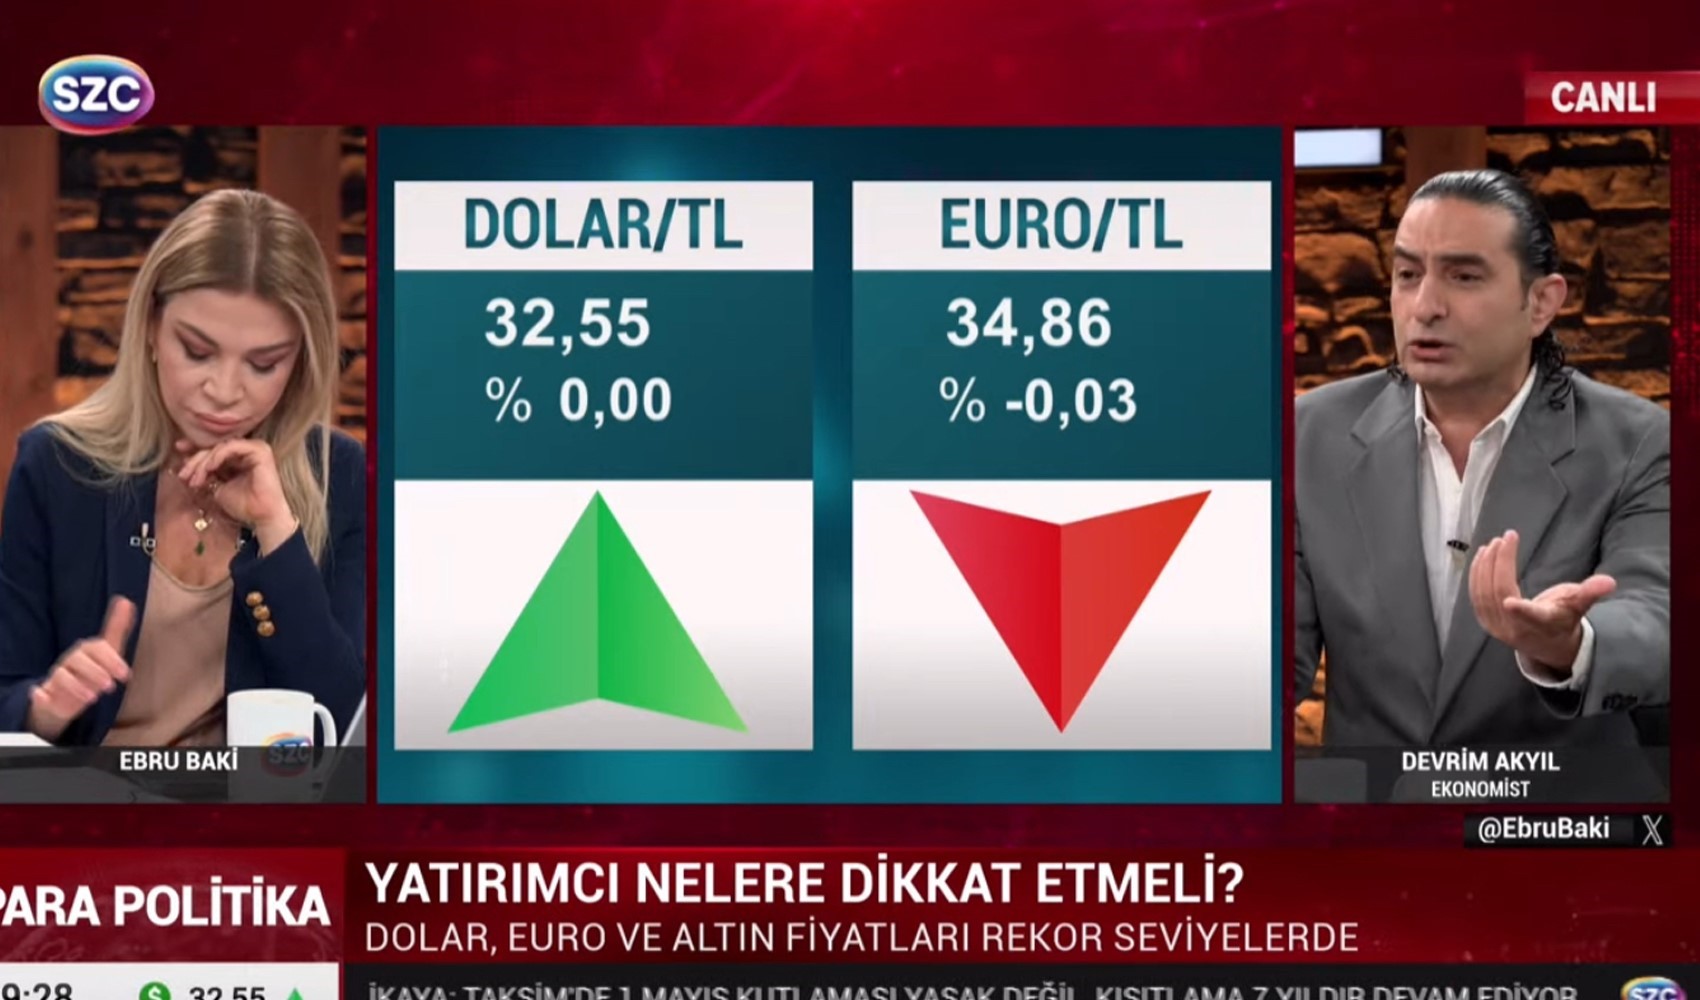 Ekonomist Devrim Akyıl ile Ebru Baki arasında 'enflasyon-kur' tartışması: 'Ben öğrenci değilim'